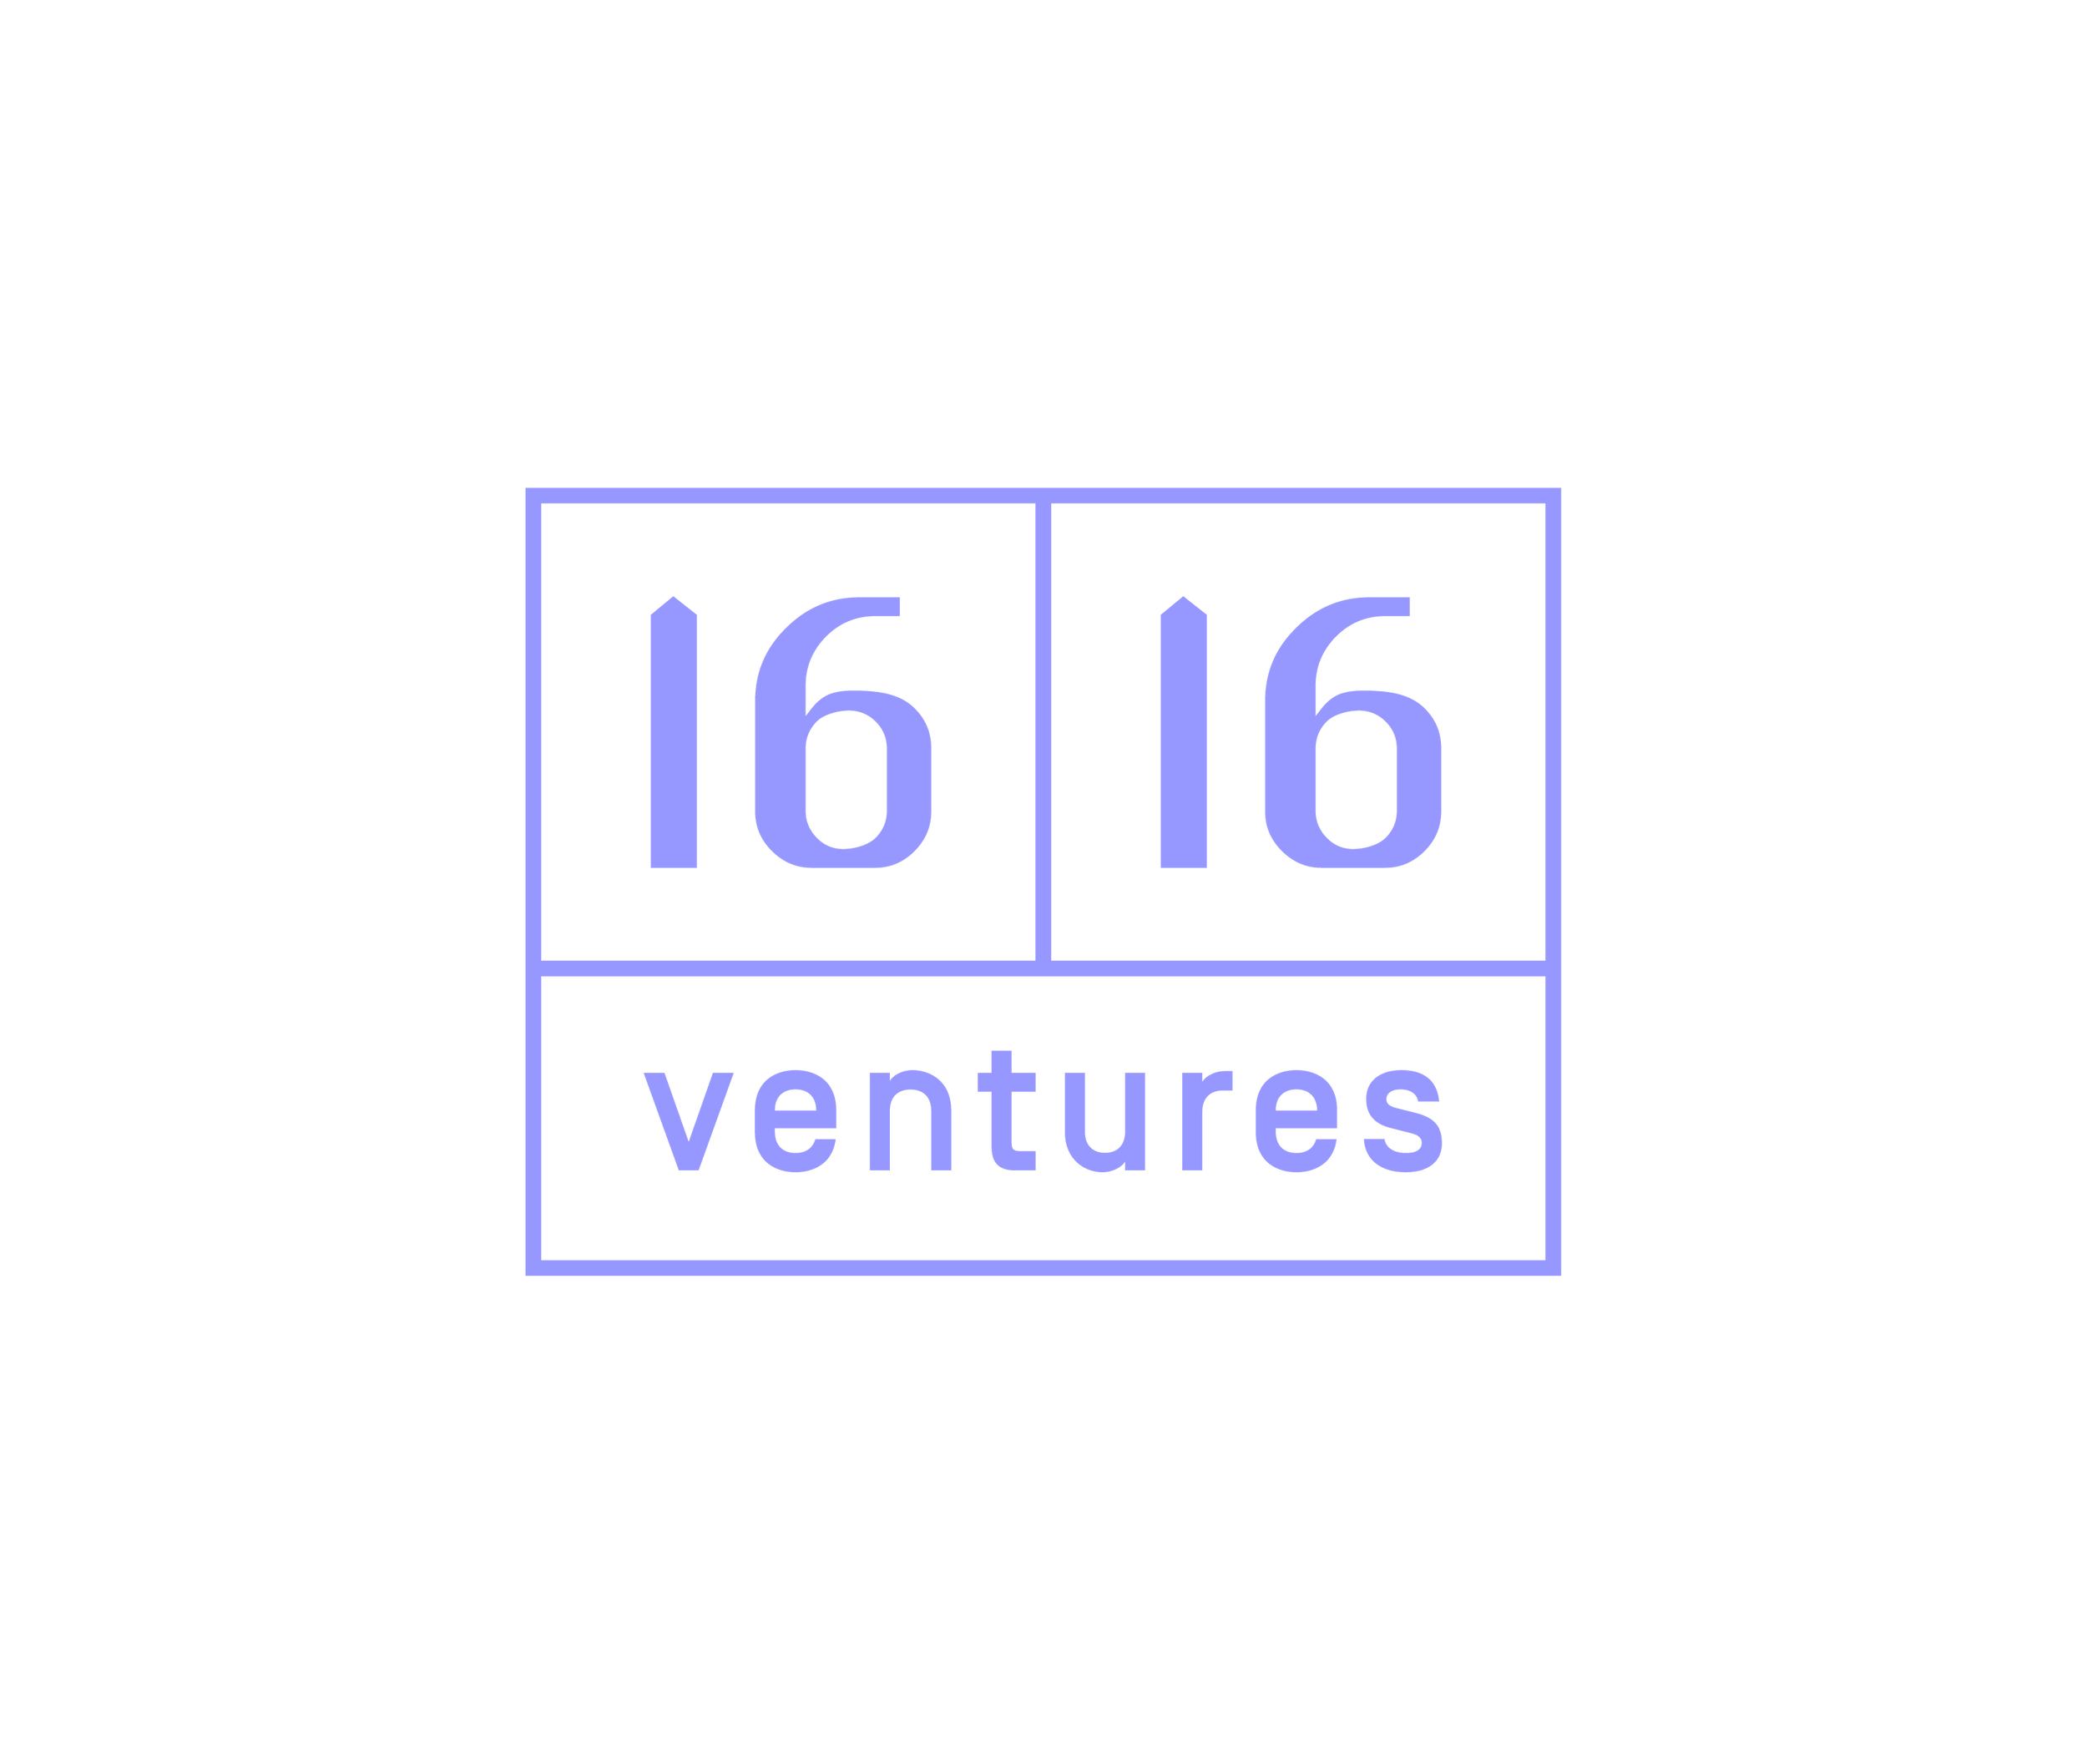 1616 Ventures